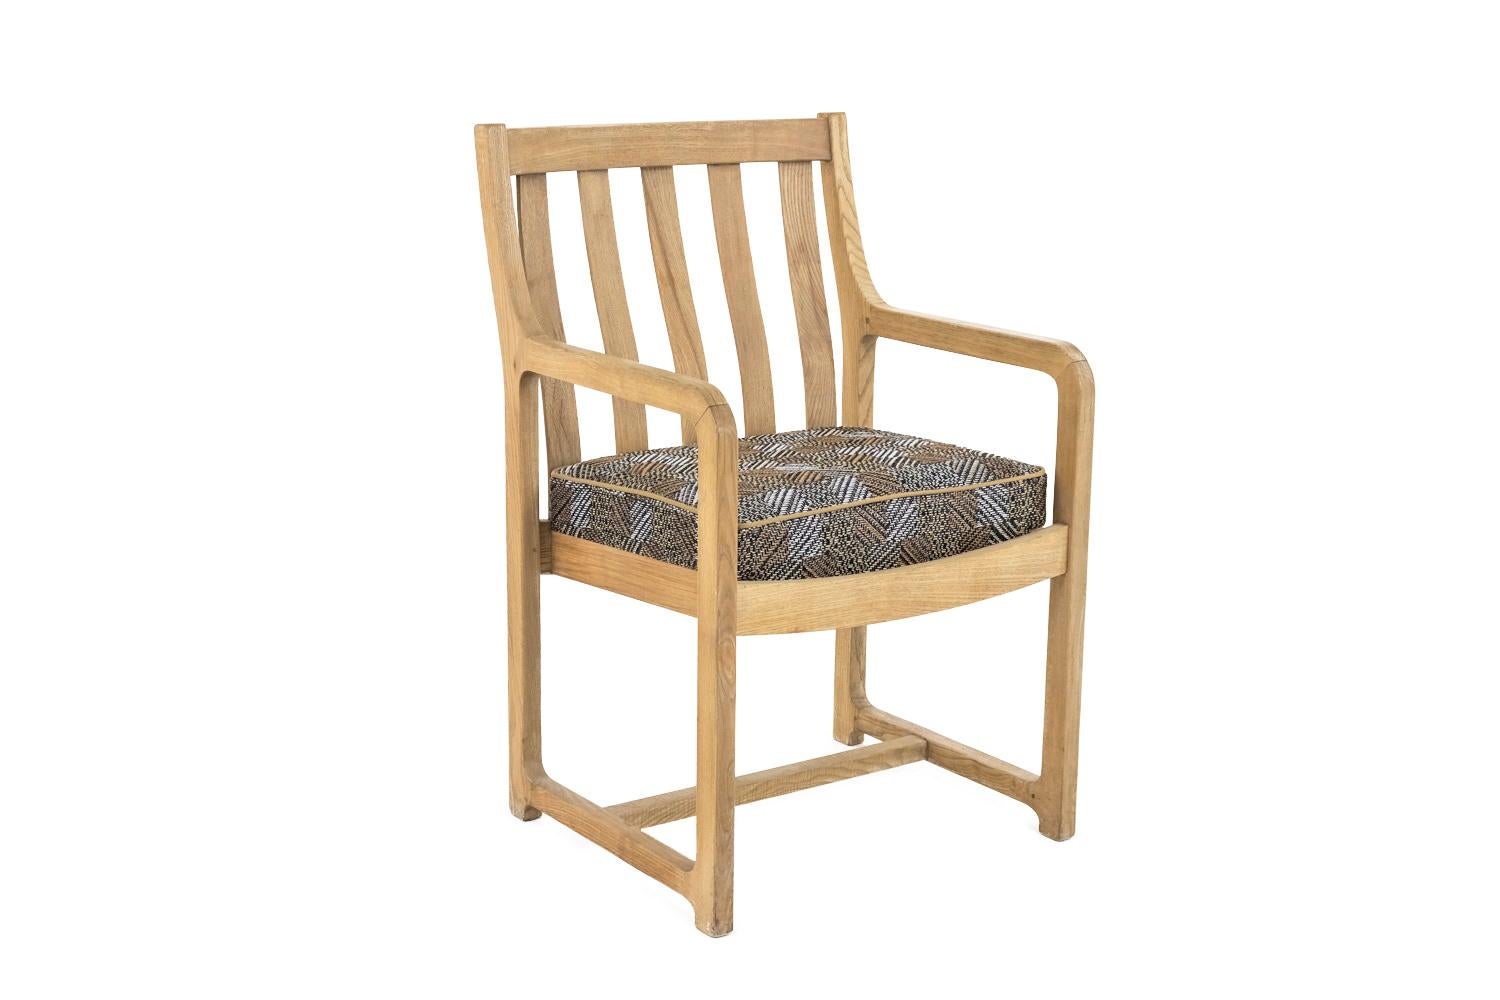 Paar Sessel aus Natureiche mit durchbrochener Rückenlehne aus fünf vertikalen Stäben, leicht gewölbt. Sie stehen auf Schlittenbeinen.

Die Garnitur besteht aus einem quadratischen Kissen.

Arbeiten aus den 1950er-1960er Jahren.